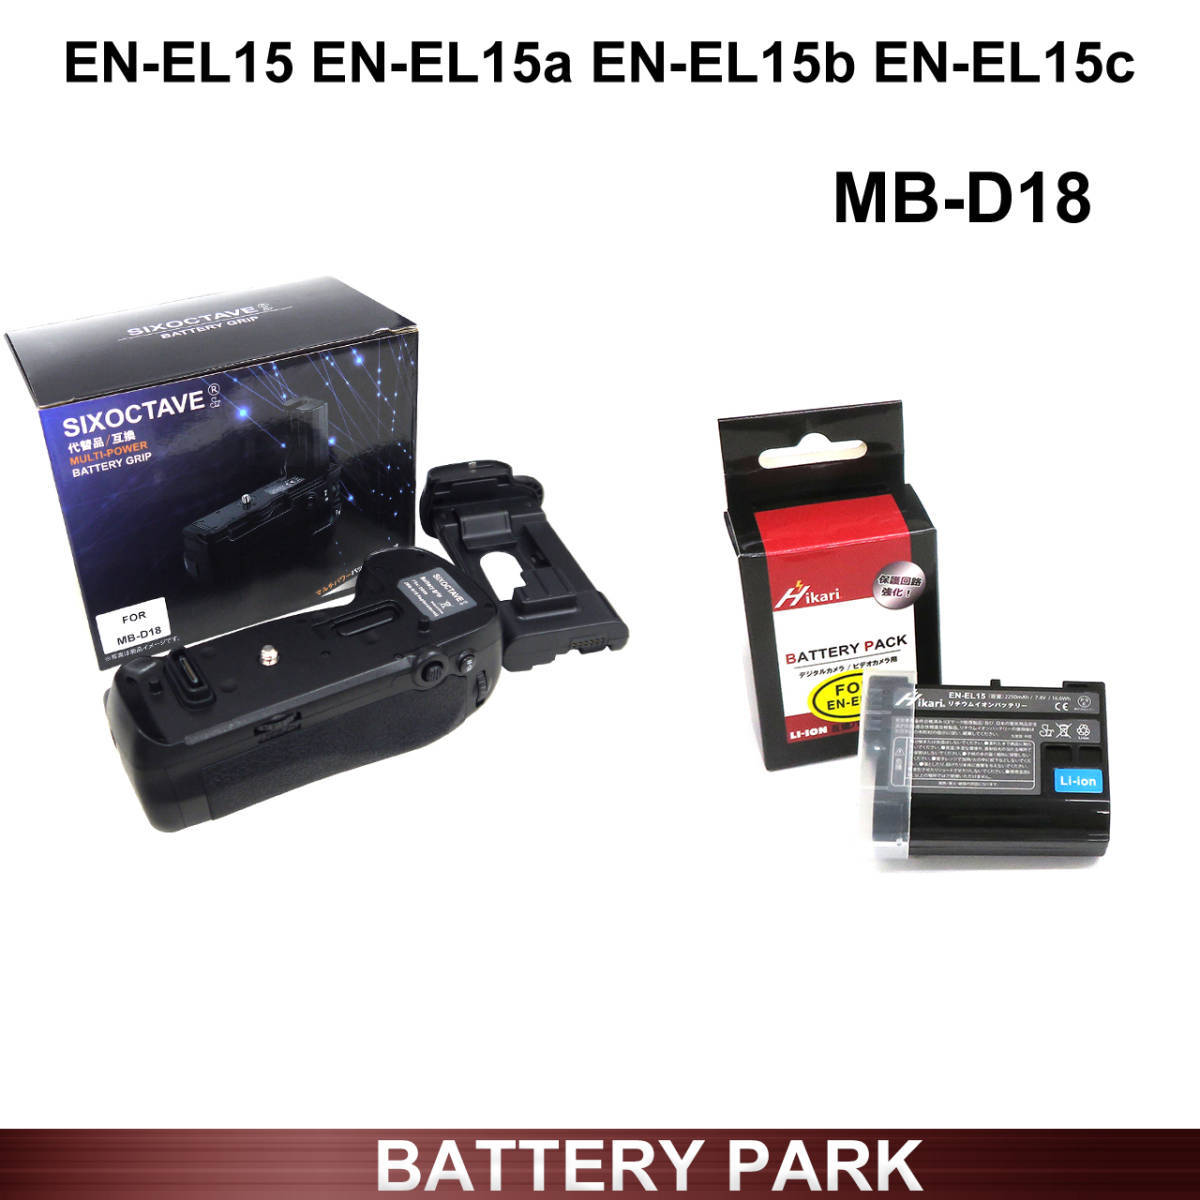 送料無料 Nikon D850 用 MB-D18 マルチパワーバッテリーパック とEN-EL15a EN-EL15b EN-EL15 互換 大容量互換バッテリー